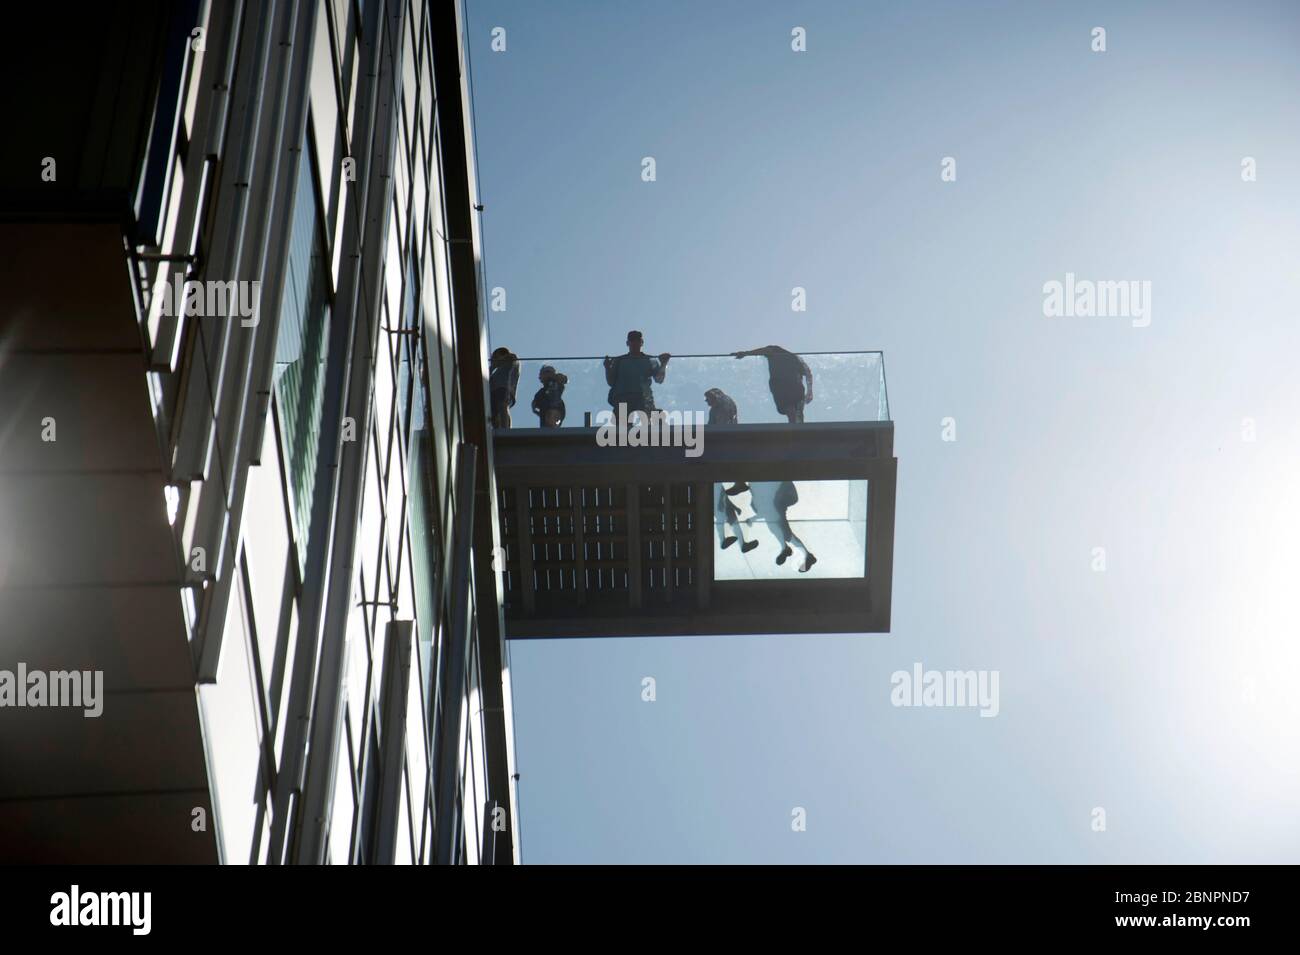 Dänemark, Aarhus, rooftop bar Salling department store Stock Photo